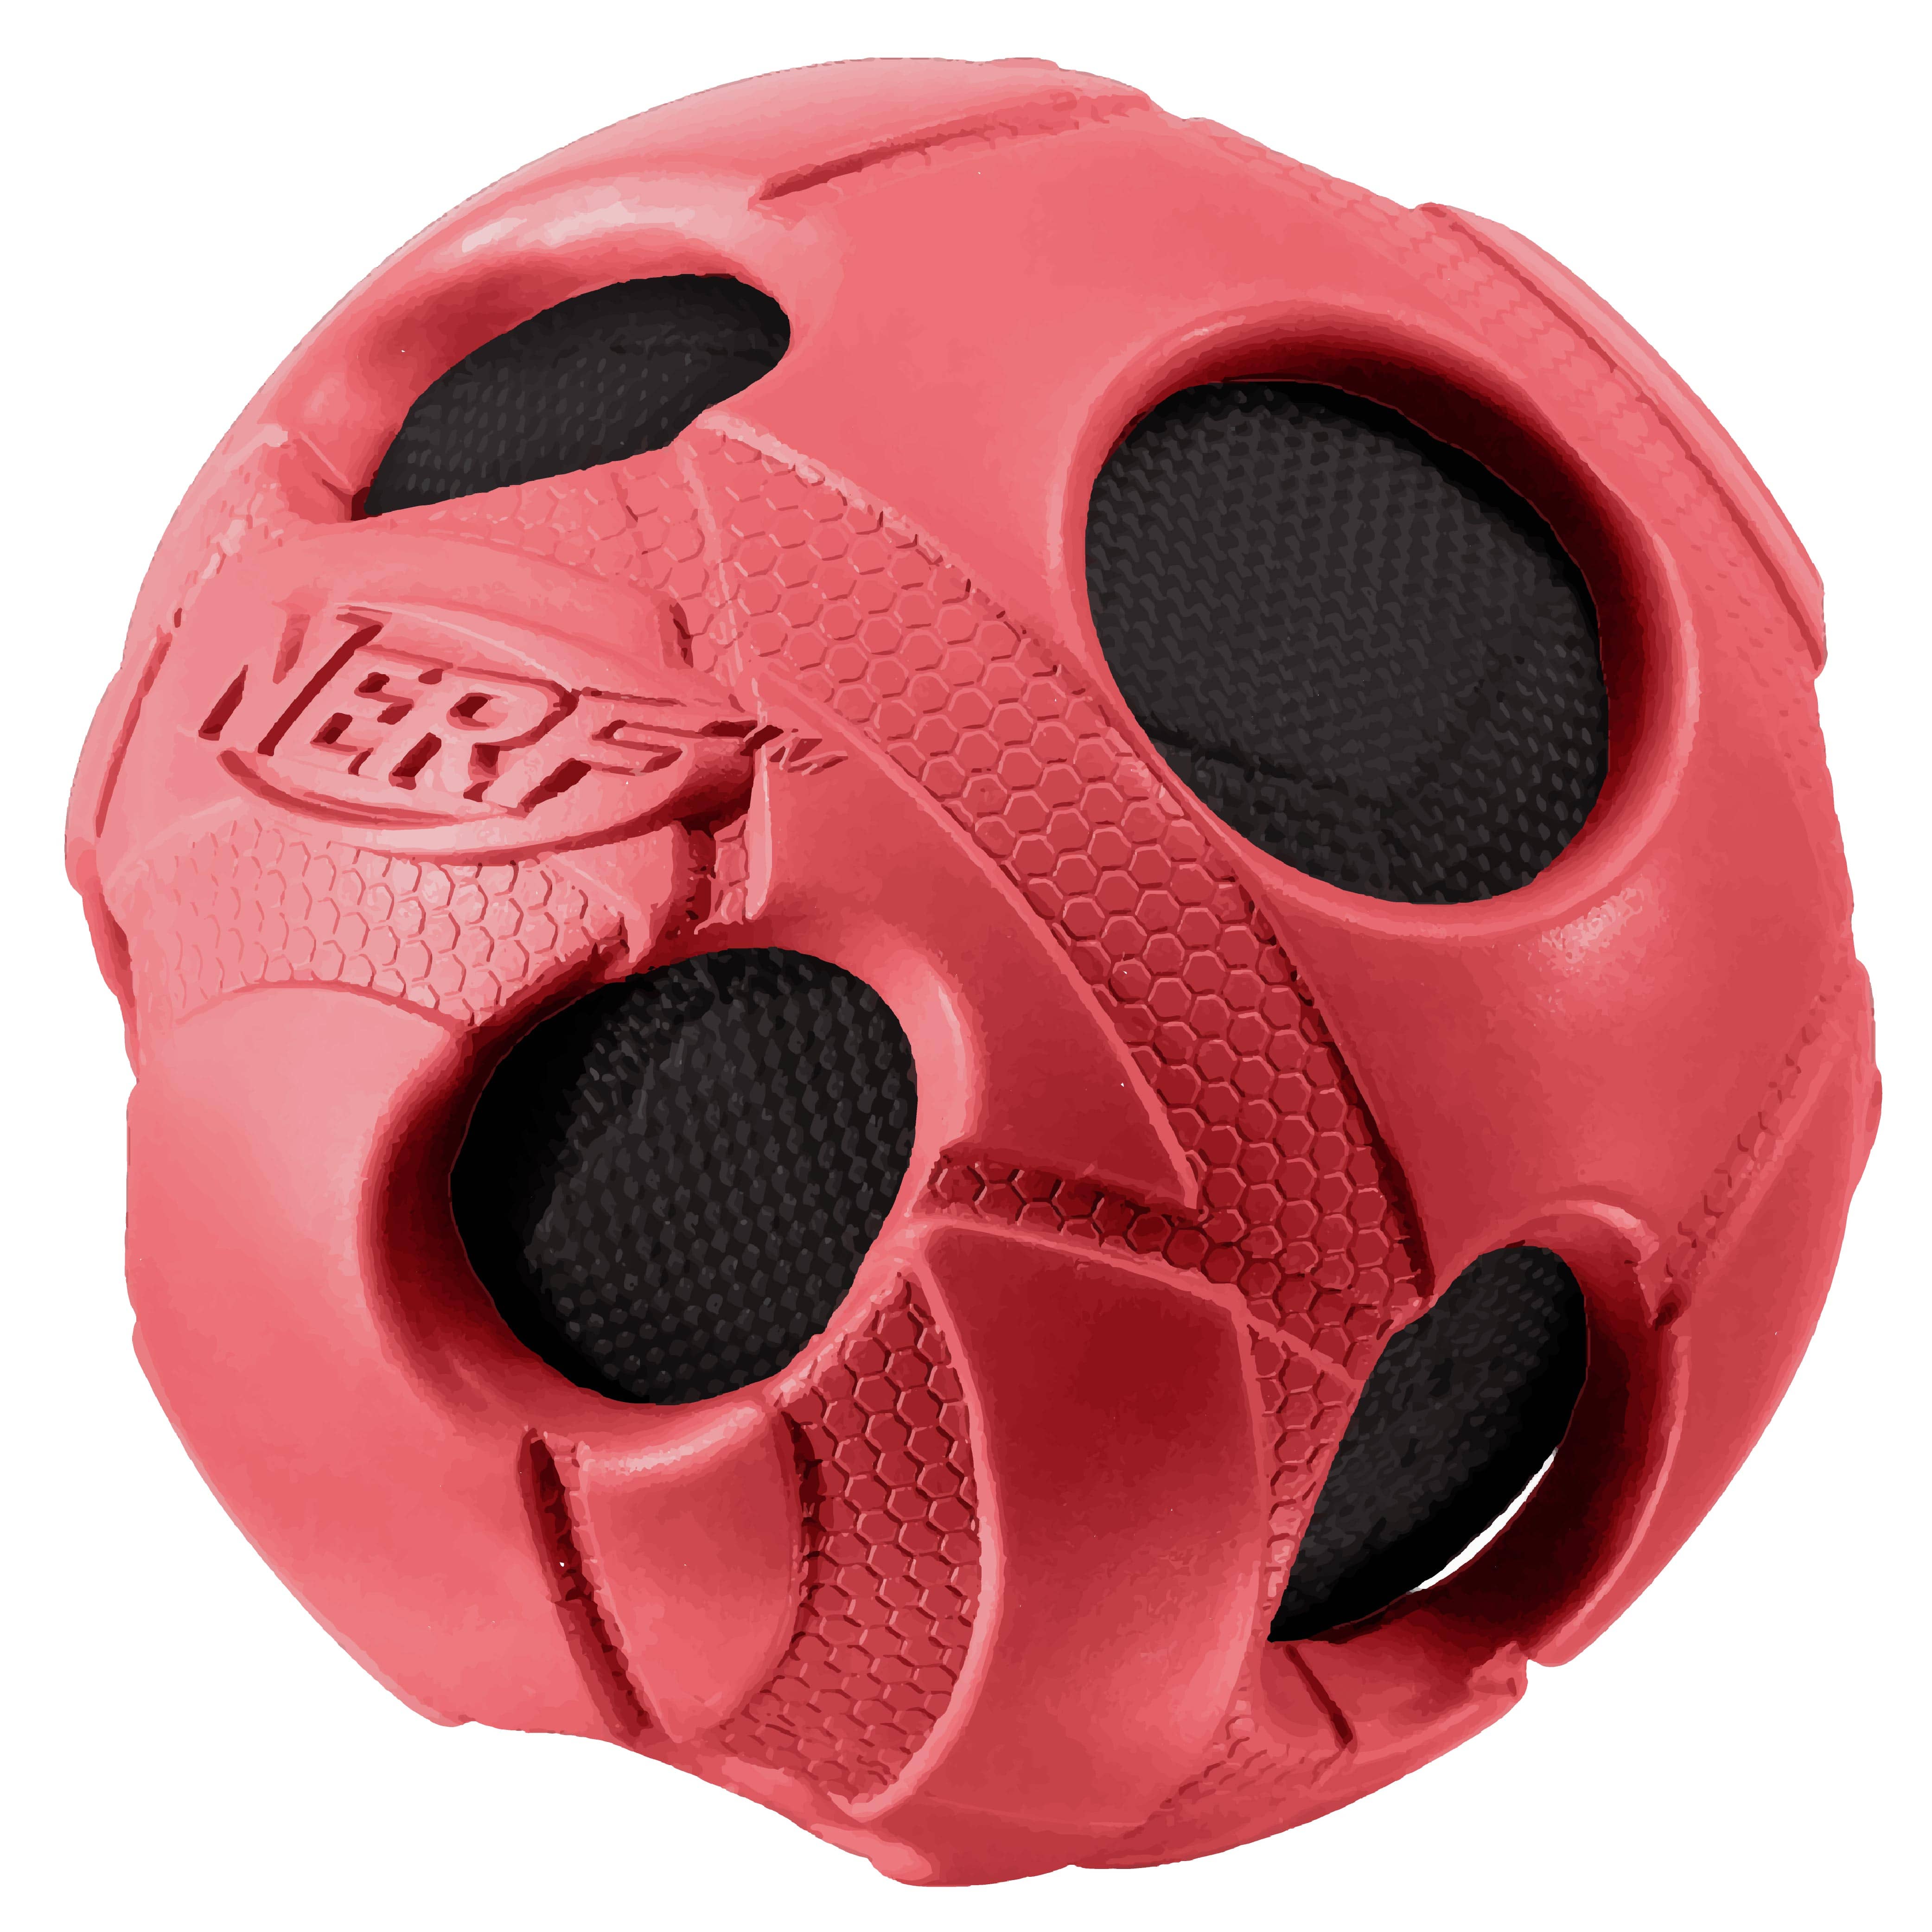 Nerf Dog LARGE Rubber Wrapped BASH Tennis Ball - Nerf Dog Toys